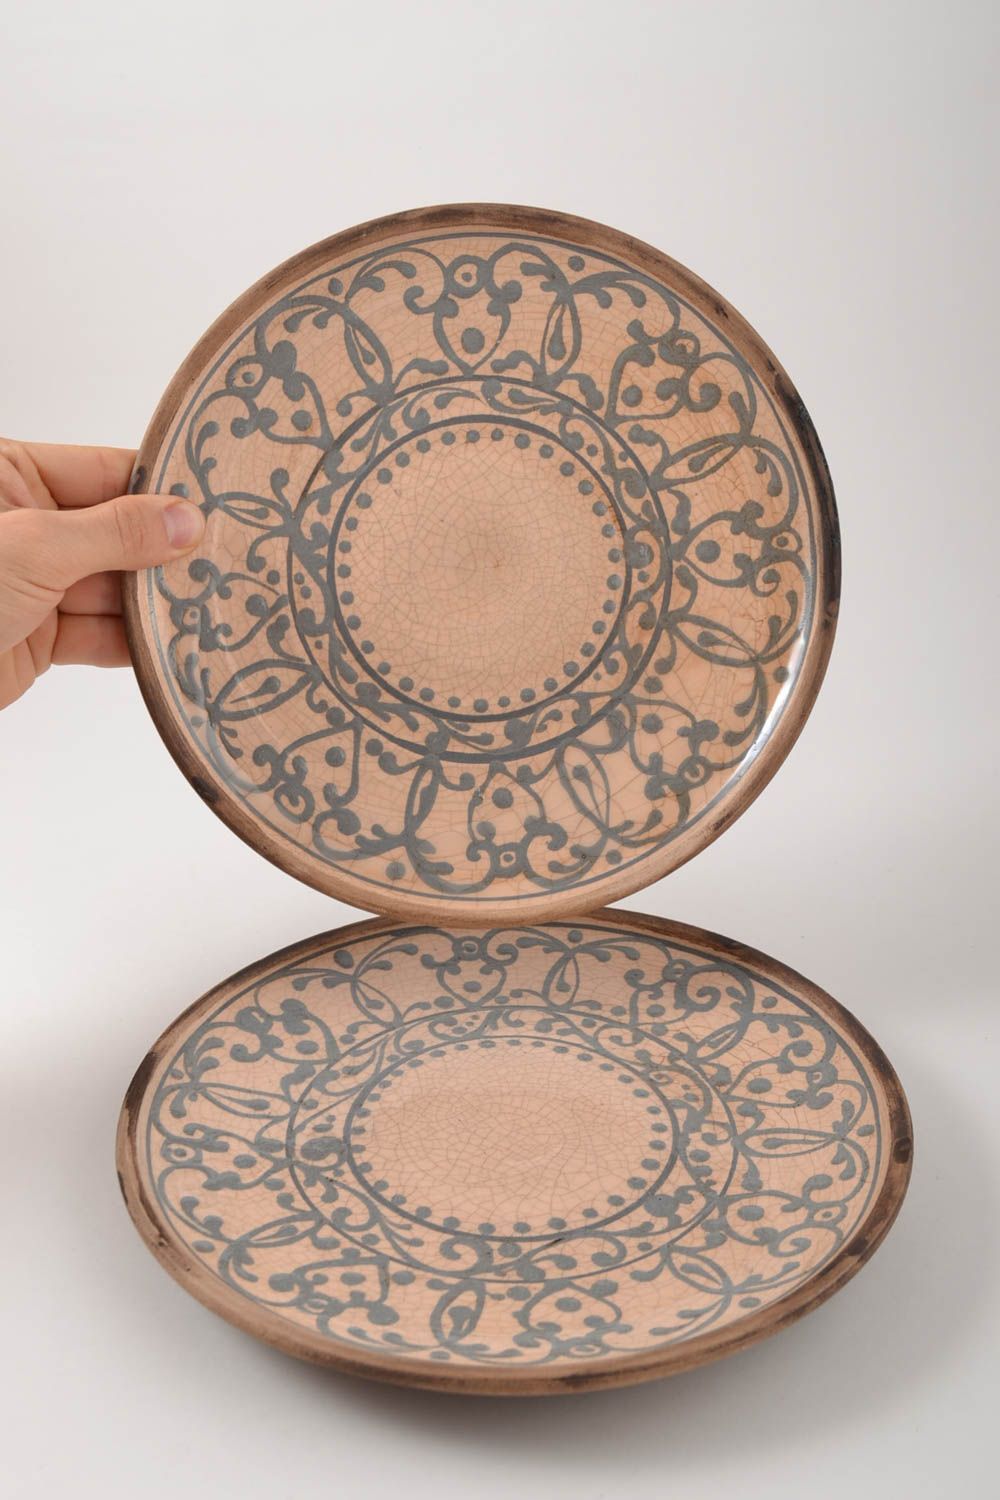 Керамические тарелки ручной работы глиняная посуда две расписные тарелки фото 5